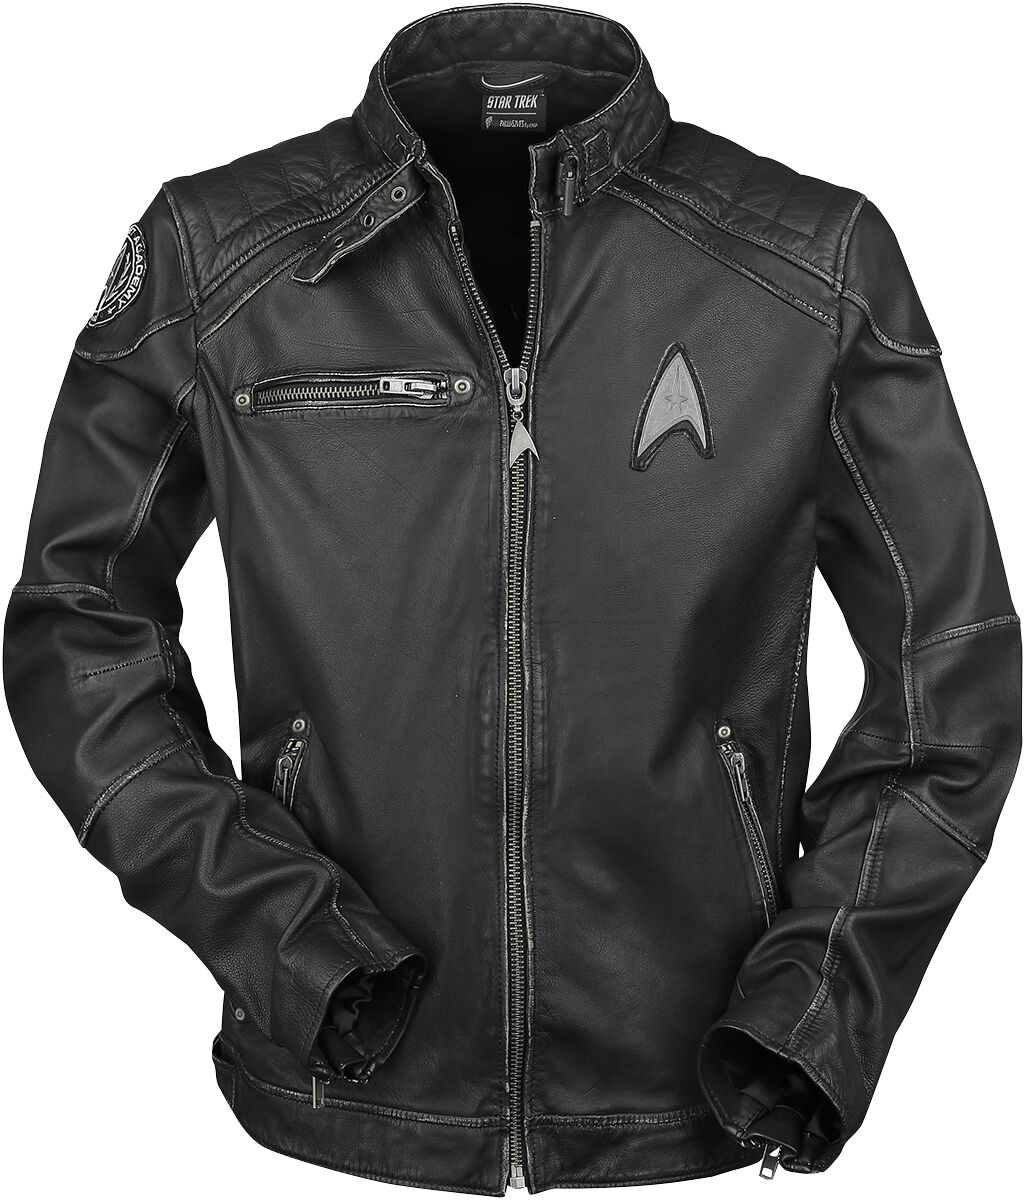 Star Trek Lederjacke - Starship - S bis 3XL - für Männer - Größe XXL - schwarz  - EMP exklusives Merchandise! von Star Trek